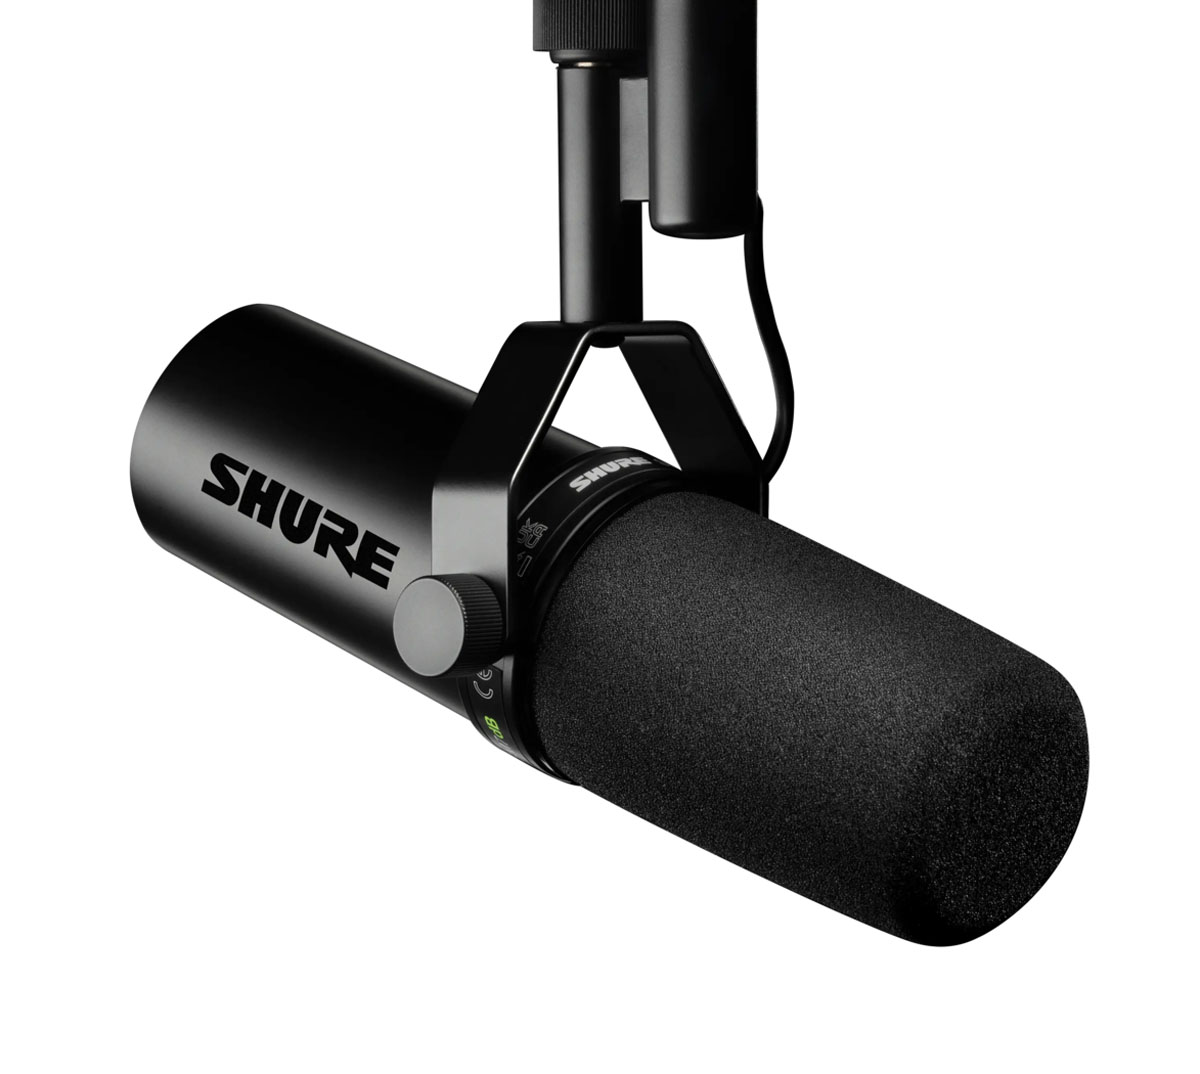 Shure SM7dB es un micrófono vocal dinámico que ha revolucionado la forma en que los músicos, podcasters, locutores y streamers perciben la calidad del audio.